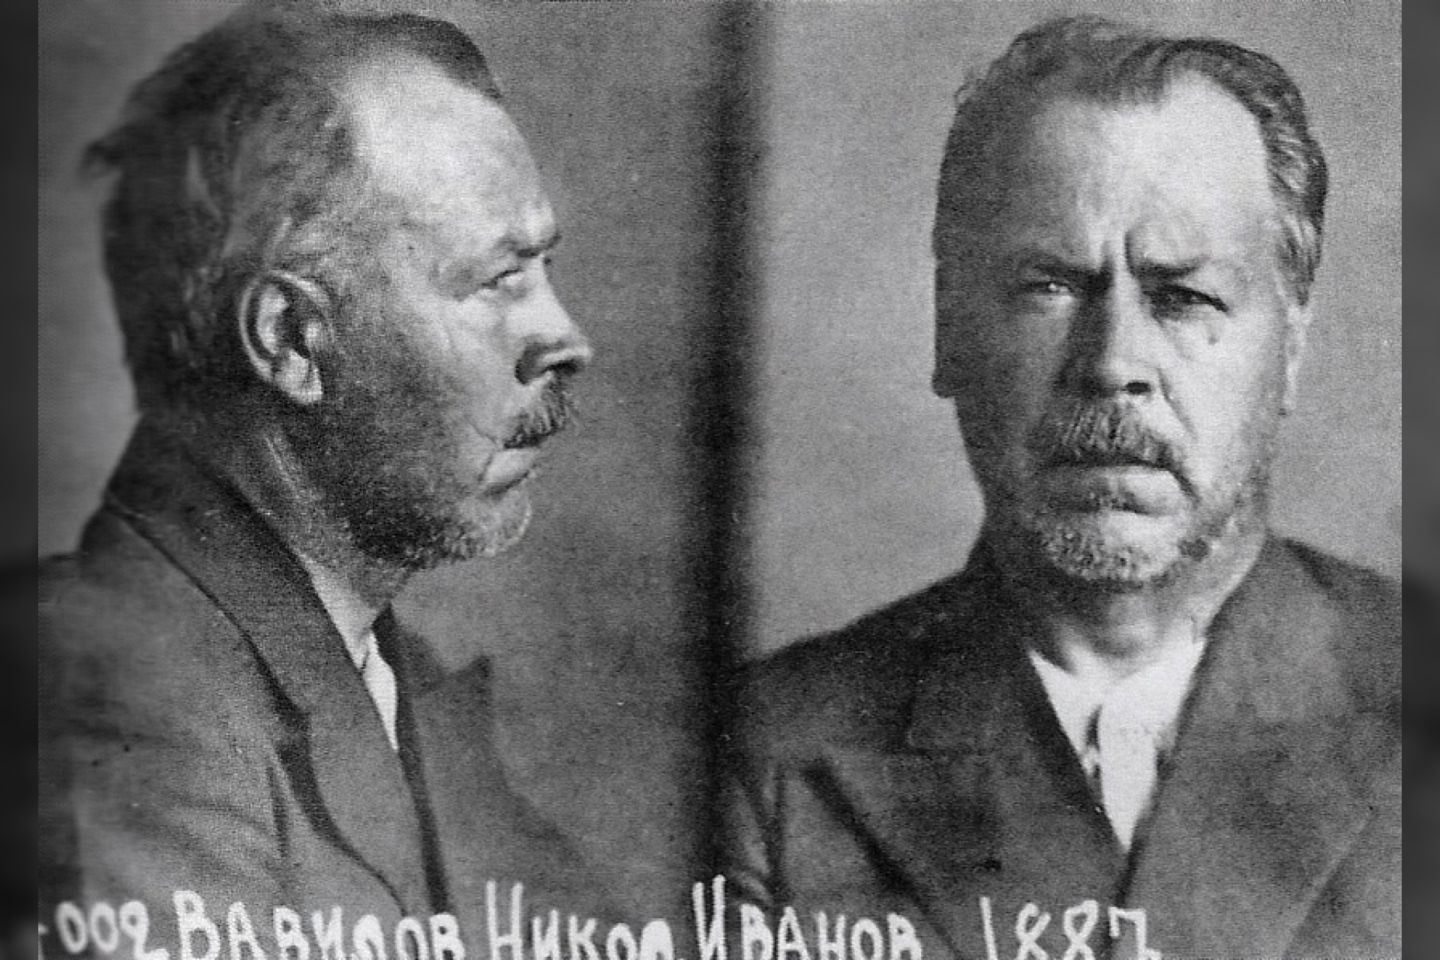  N.Vavilovas buvo suimtas bei nuteistas mirties bausme. Tiesa, bausmė buvo pakeista į 20 metų laisvės atėmimą, bet 1943 m. Vavilovas kalėjime mirė.